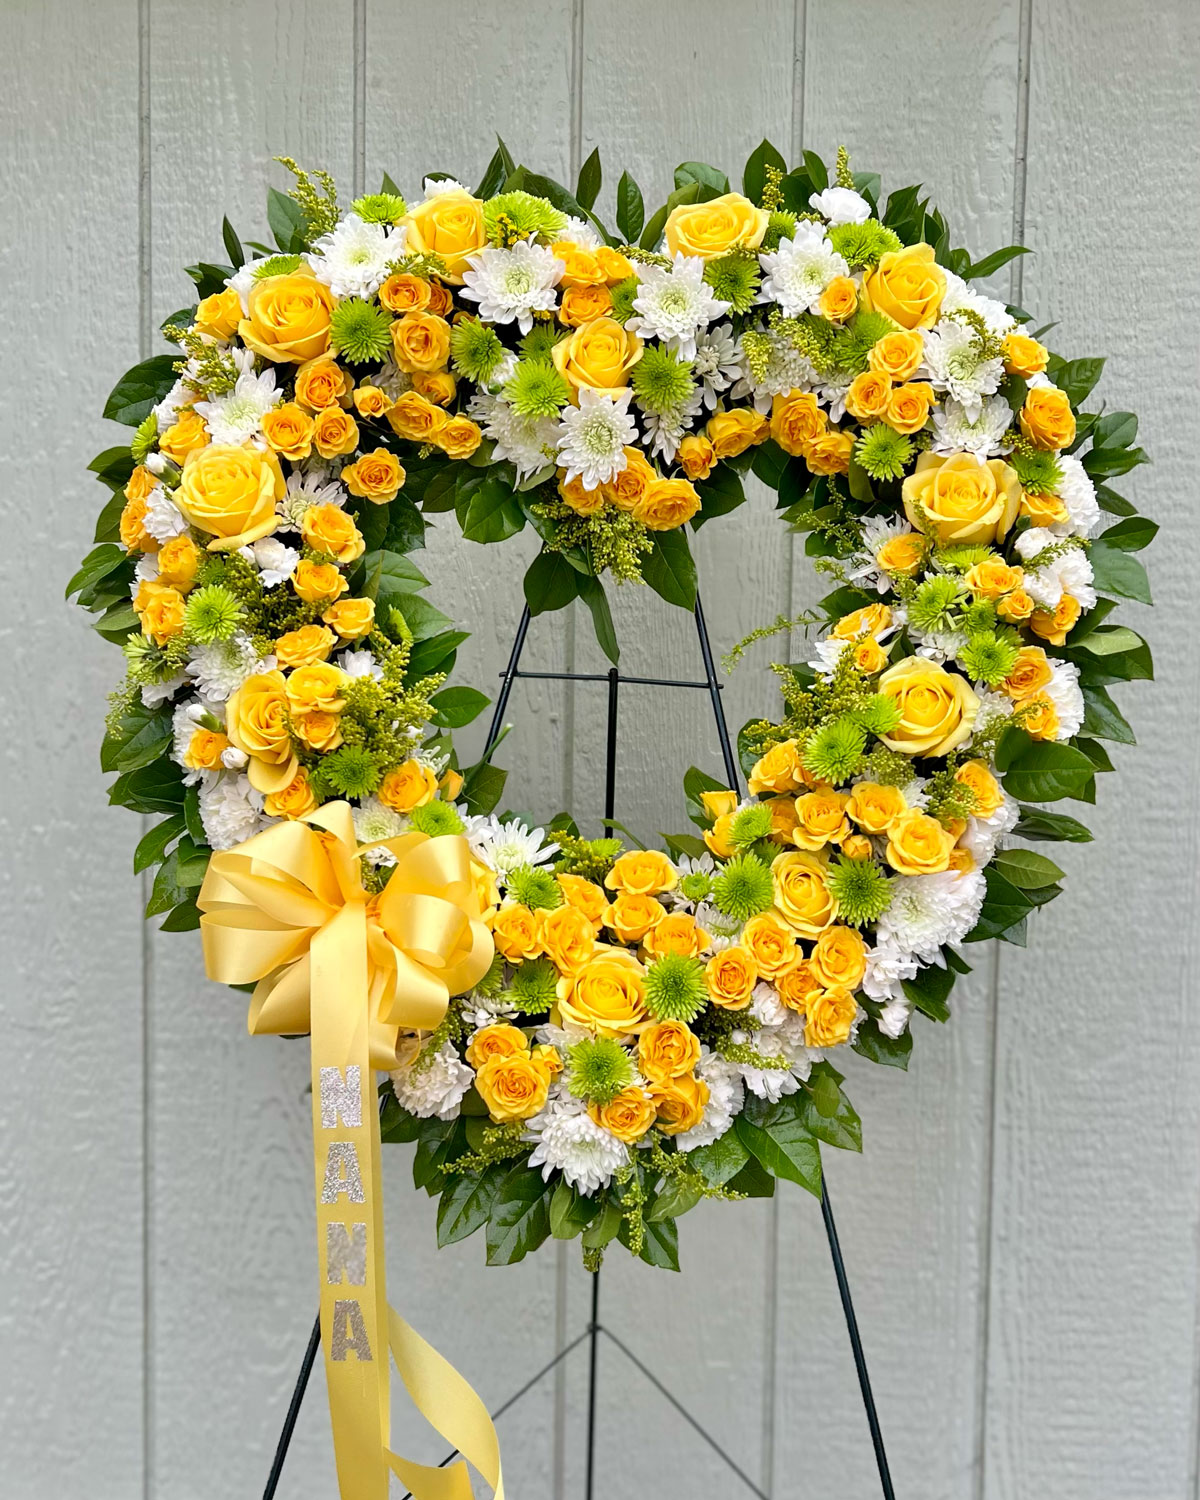 Condolence Heart Spray for Annaville Florist - located near Sawyer George Funeral Home in Corpus Christi, Texas